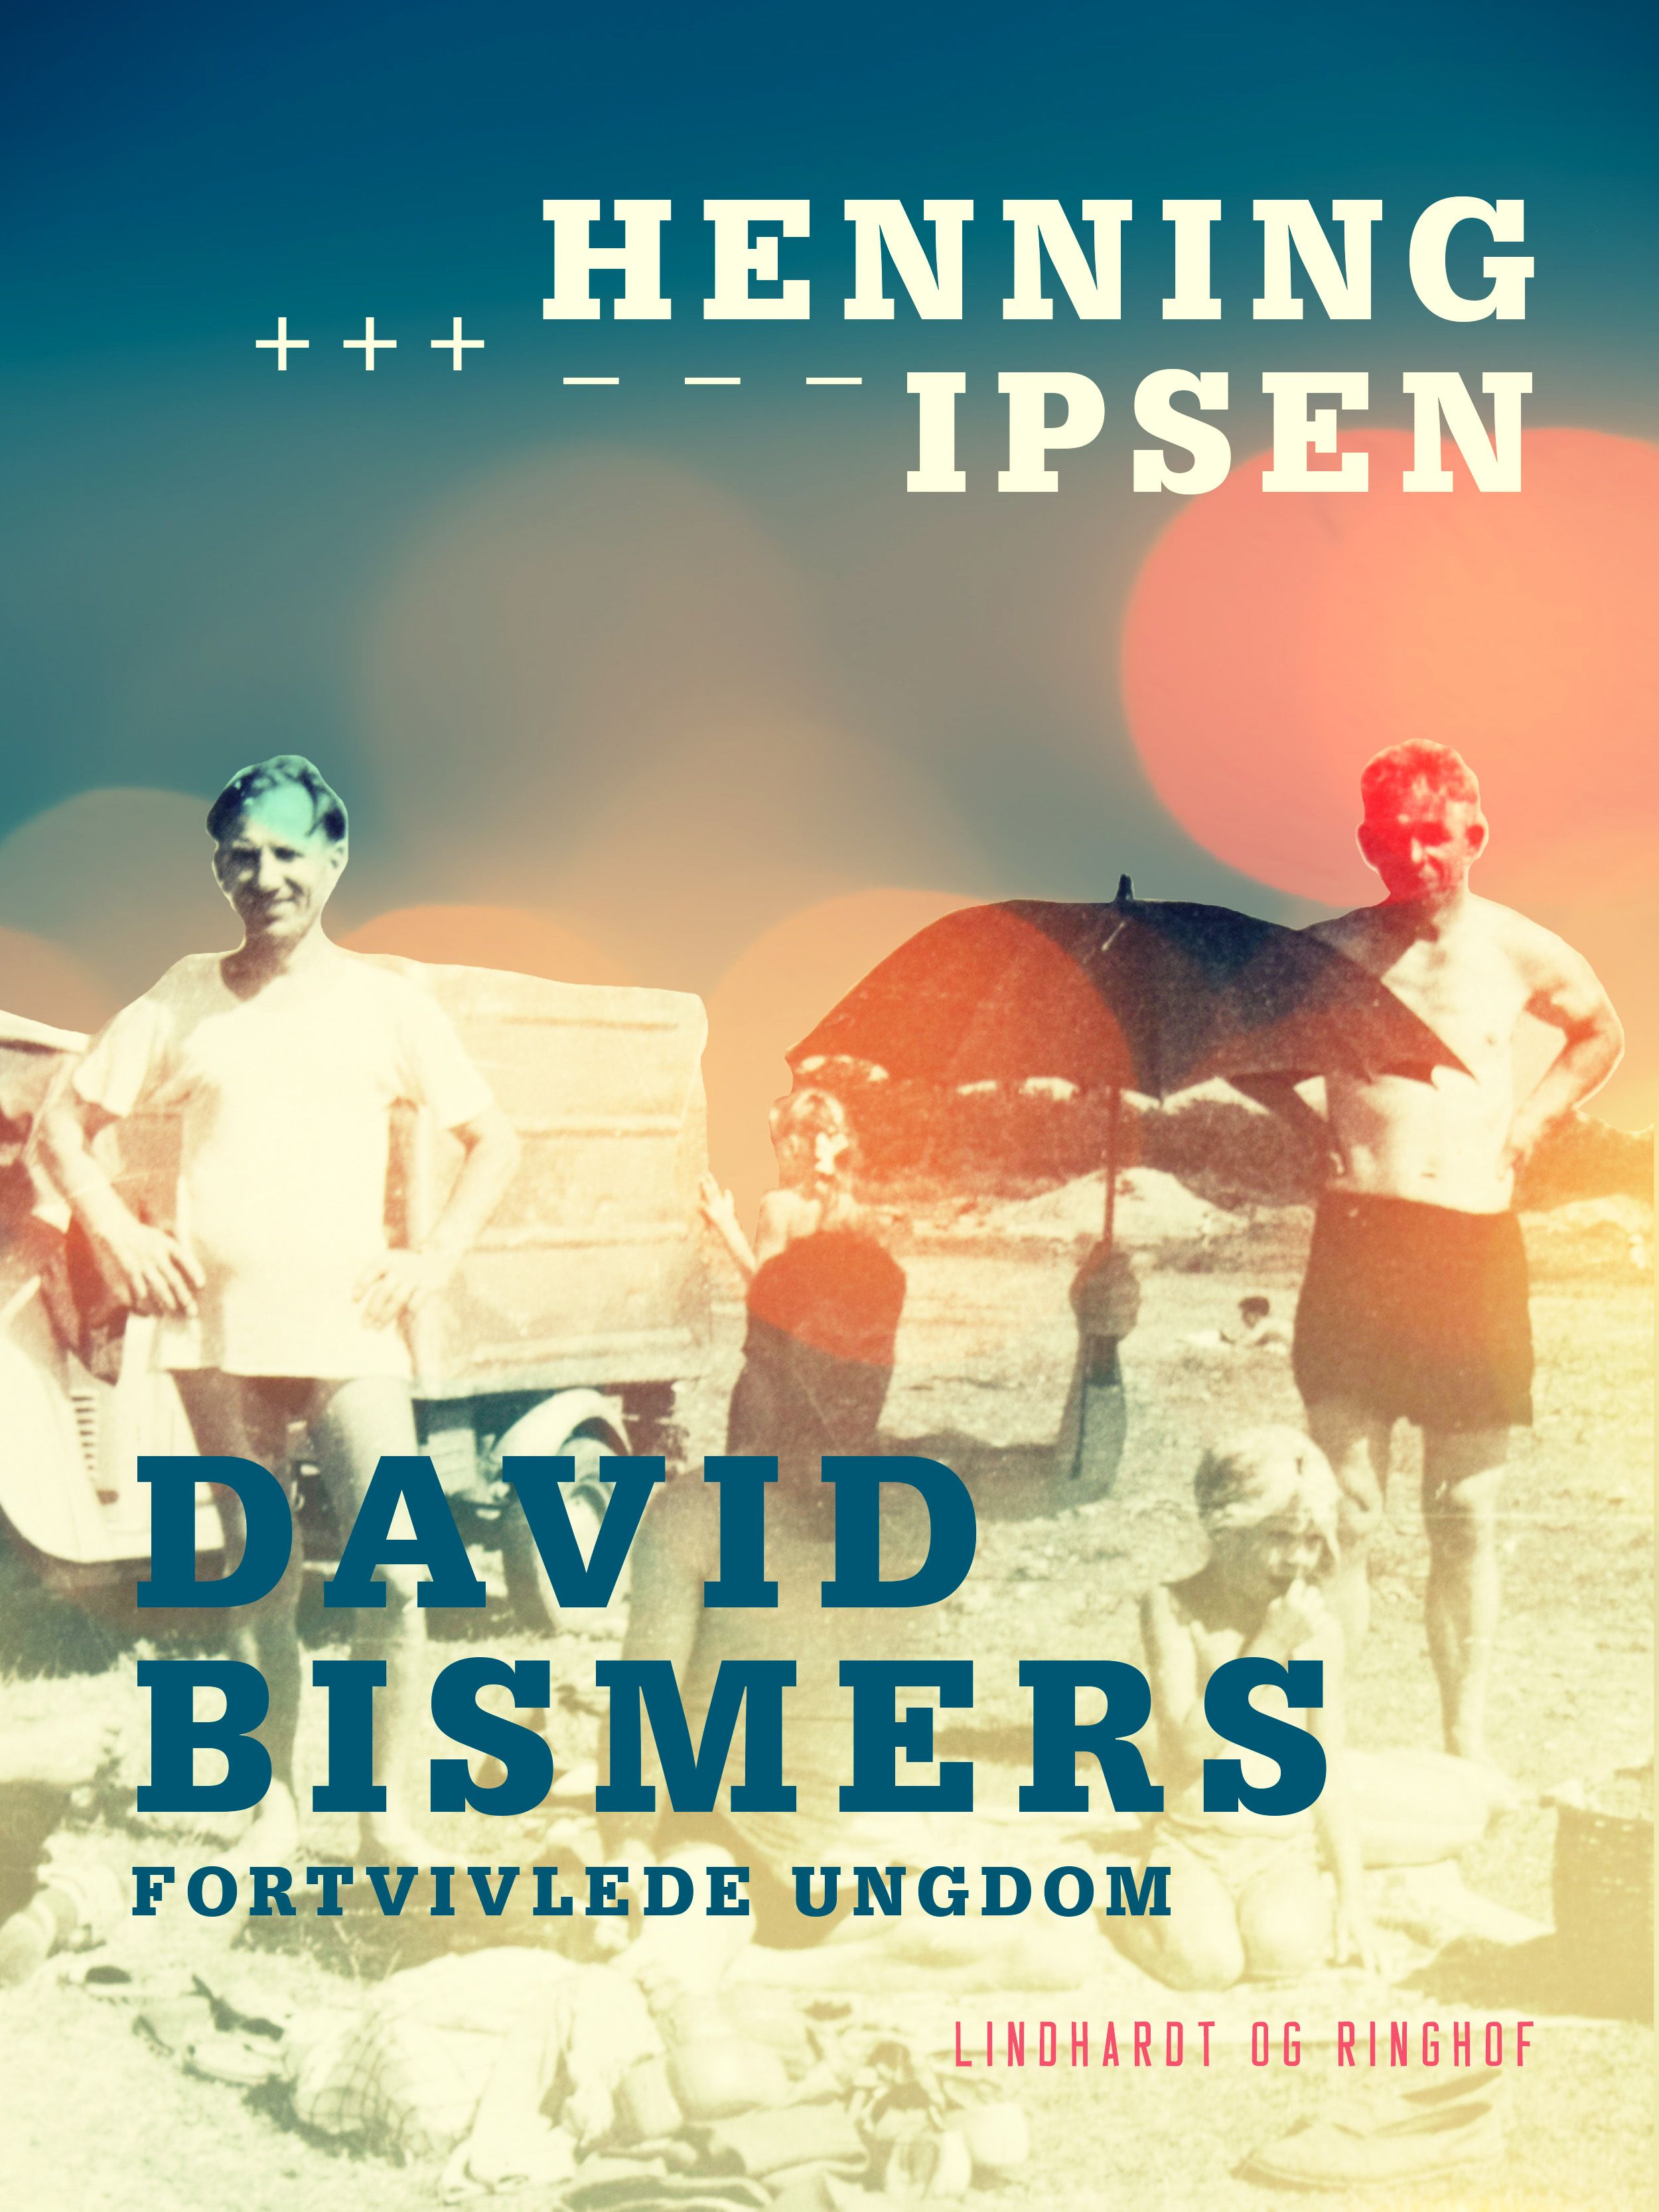 David Bismers fortvivlede ungdom, e-bok av Henning Ipsen